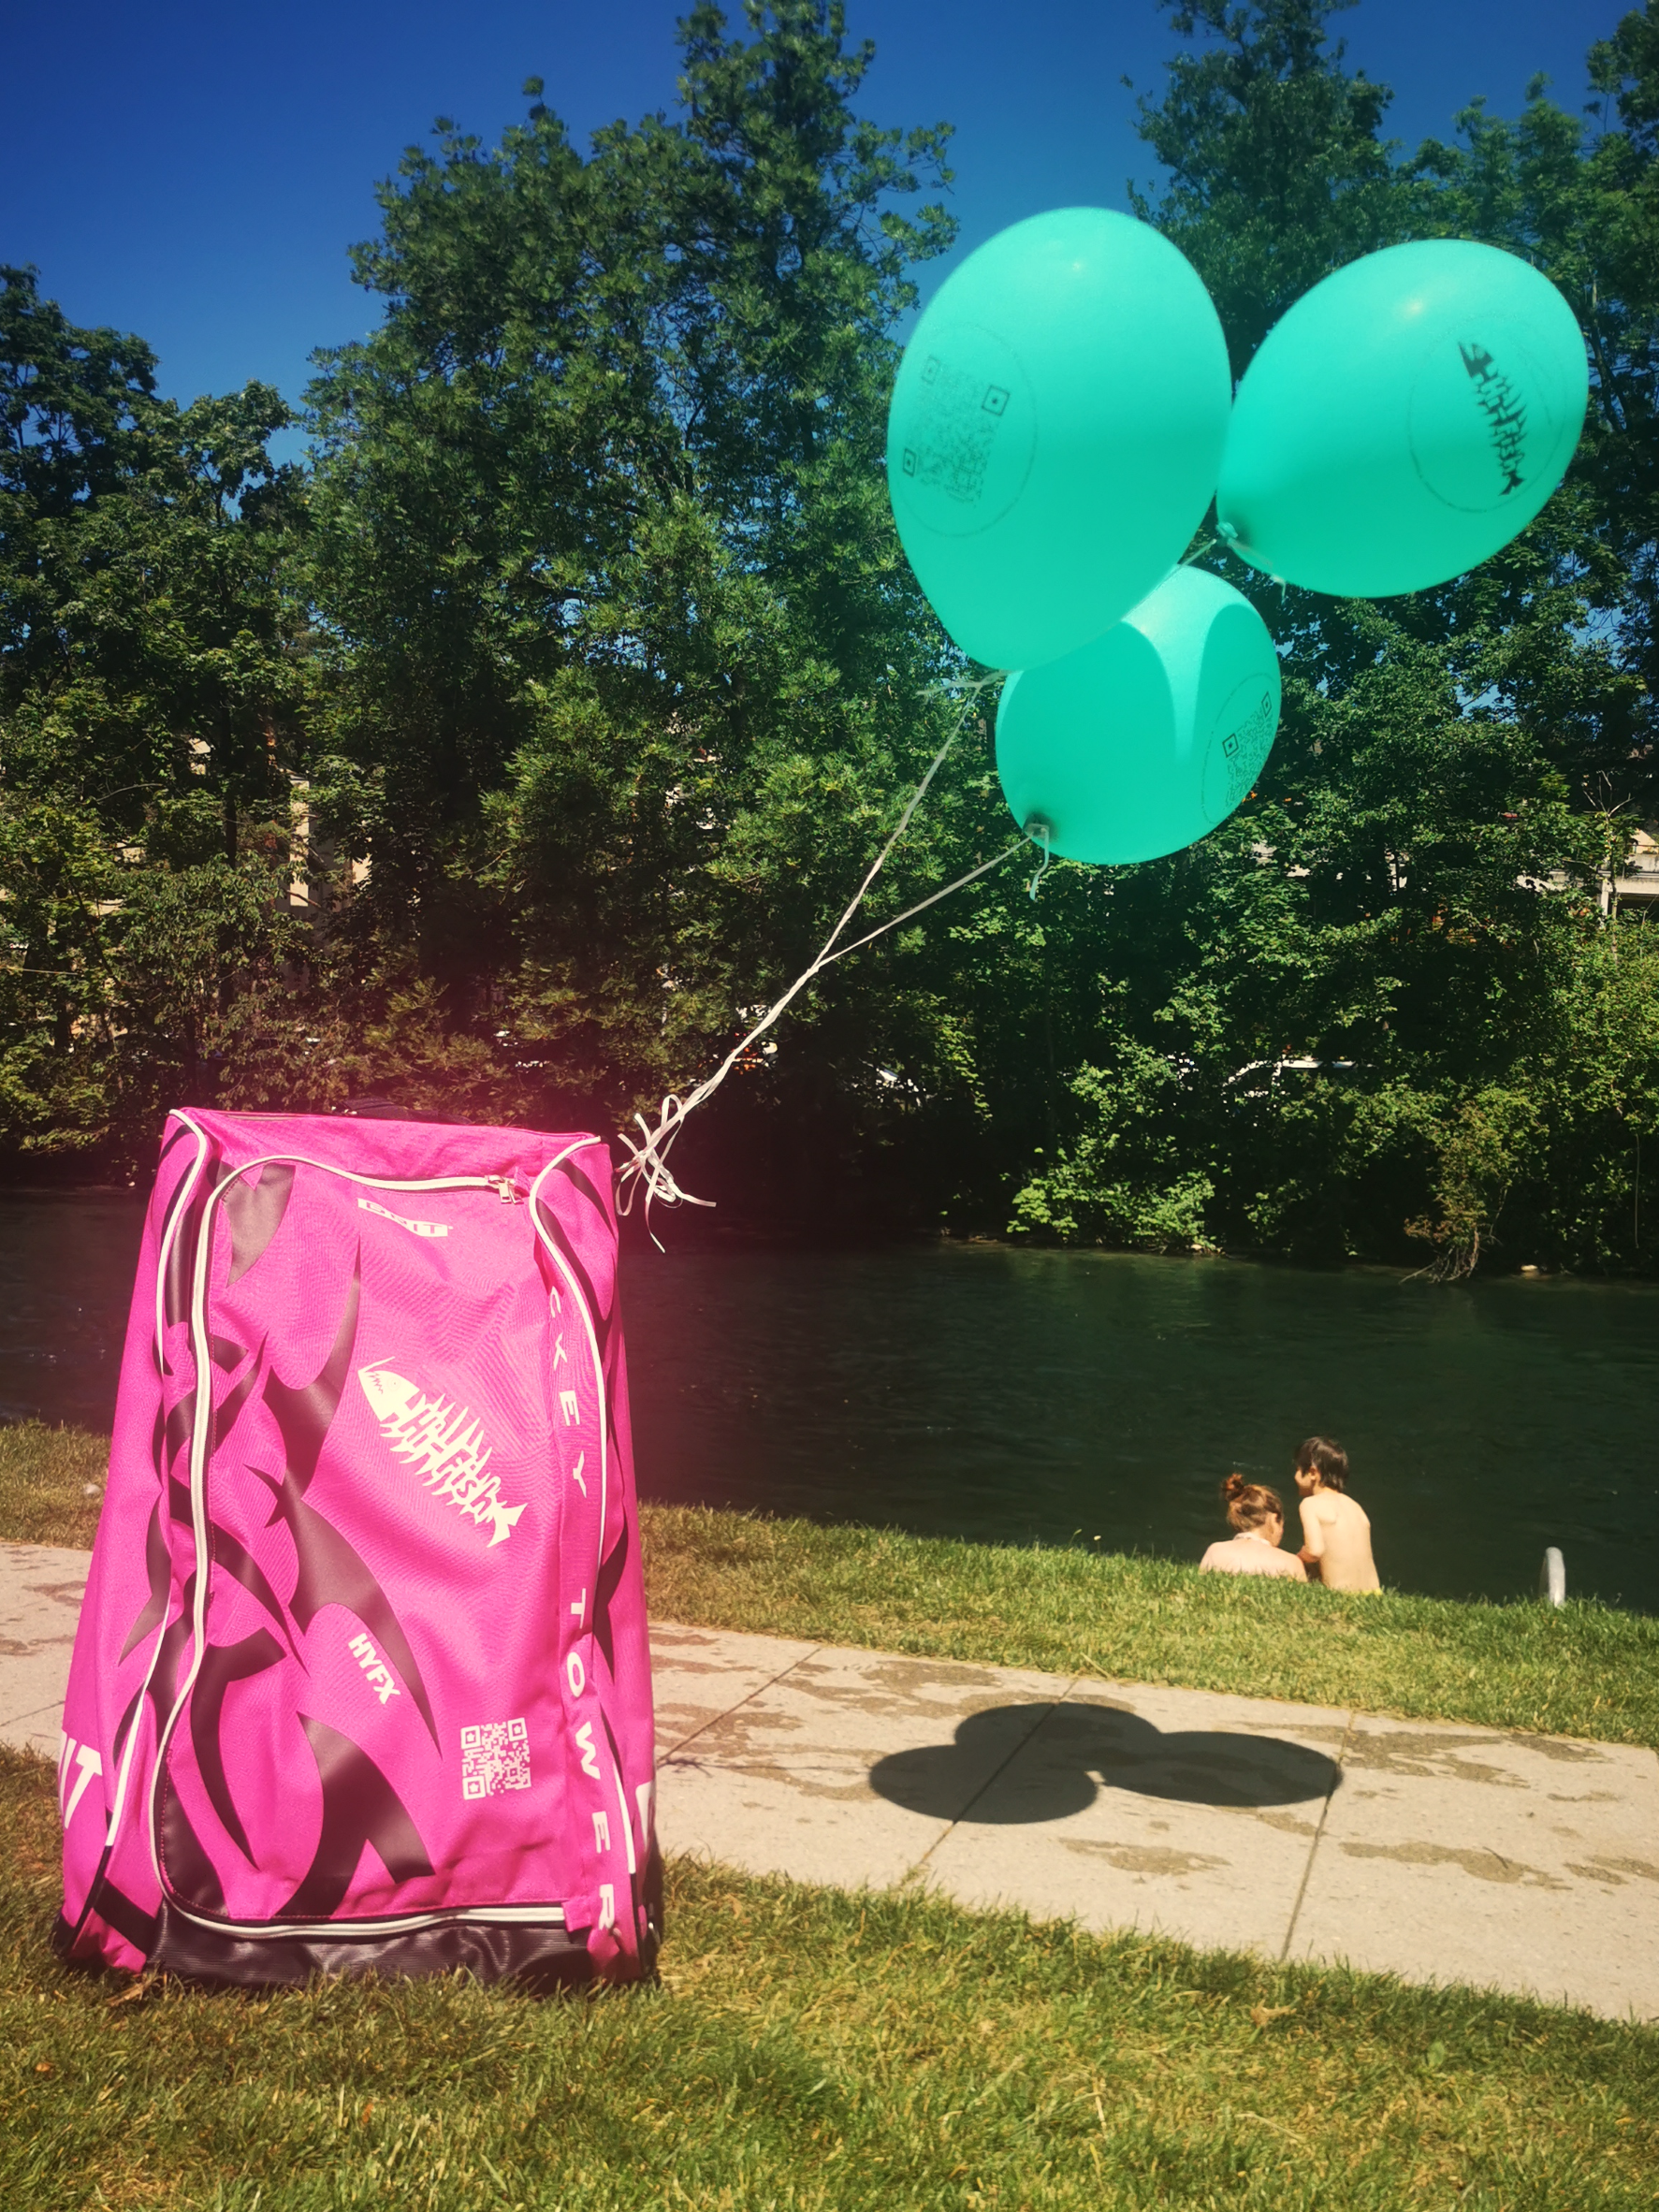 Bild mit Ballonen und Hi-Fish Hockey-Tasche auf Wiese an der Limmat.